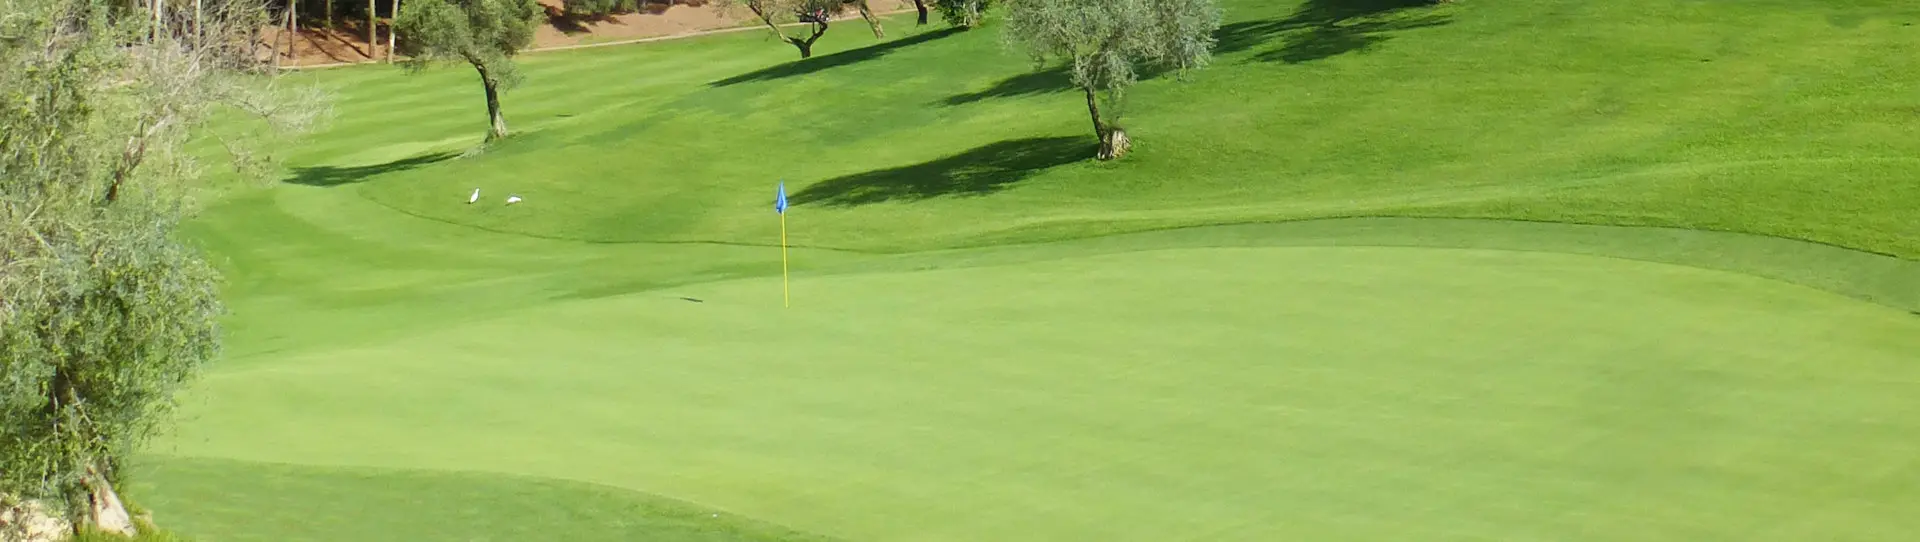 Spain golf courses - Torrequebrada Golf - Photo 1